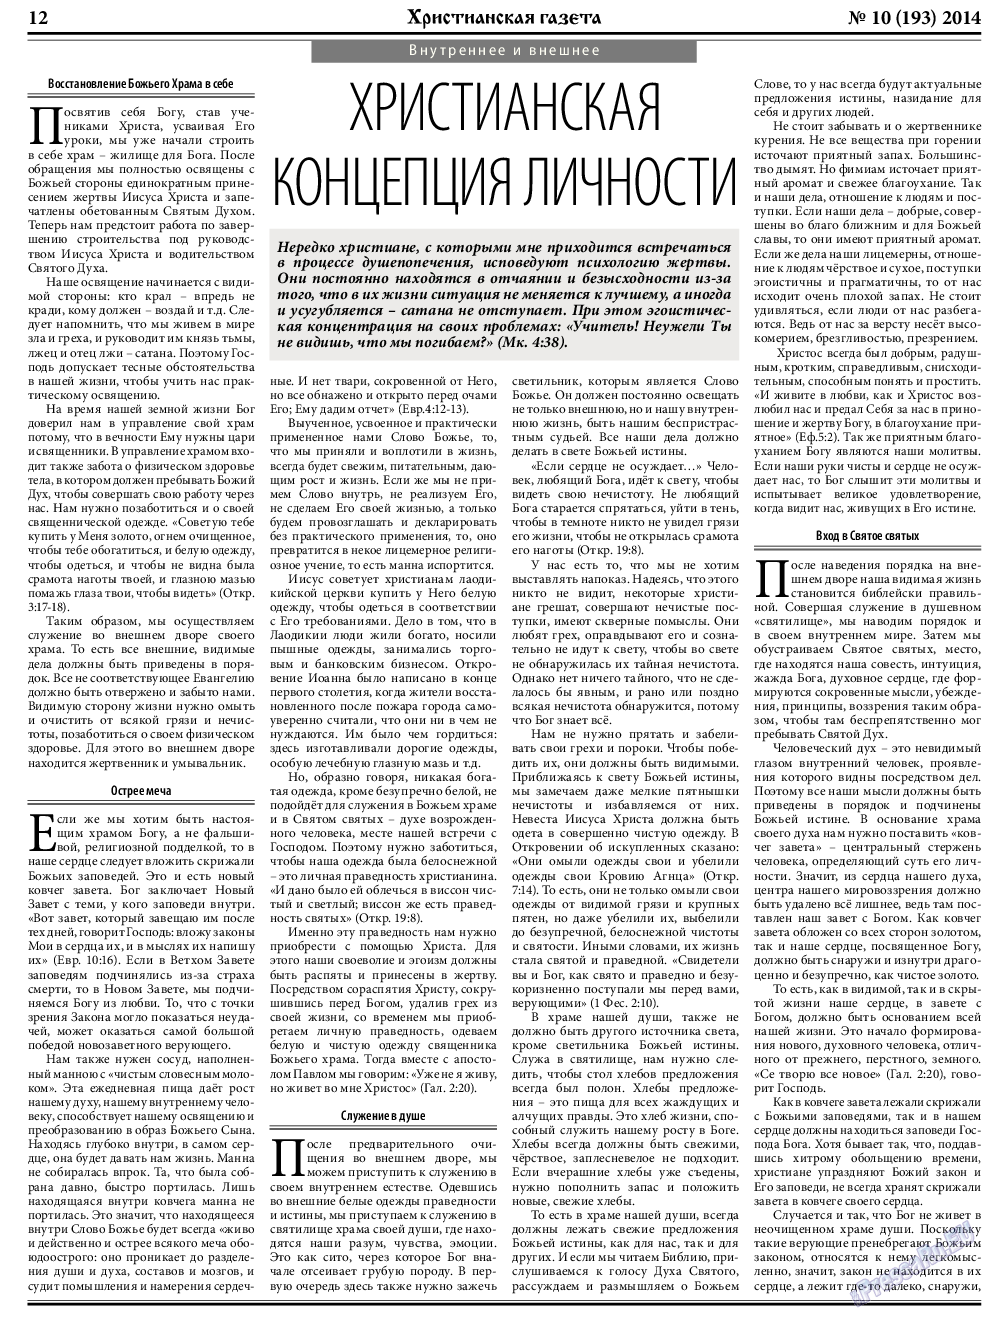 Христианская газета, газета. 2014 №10 стр.12